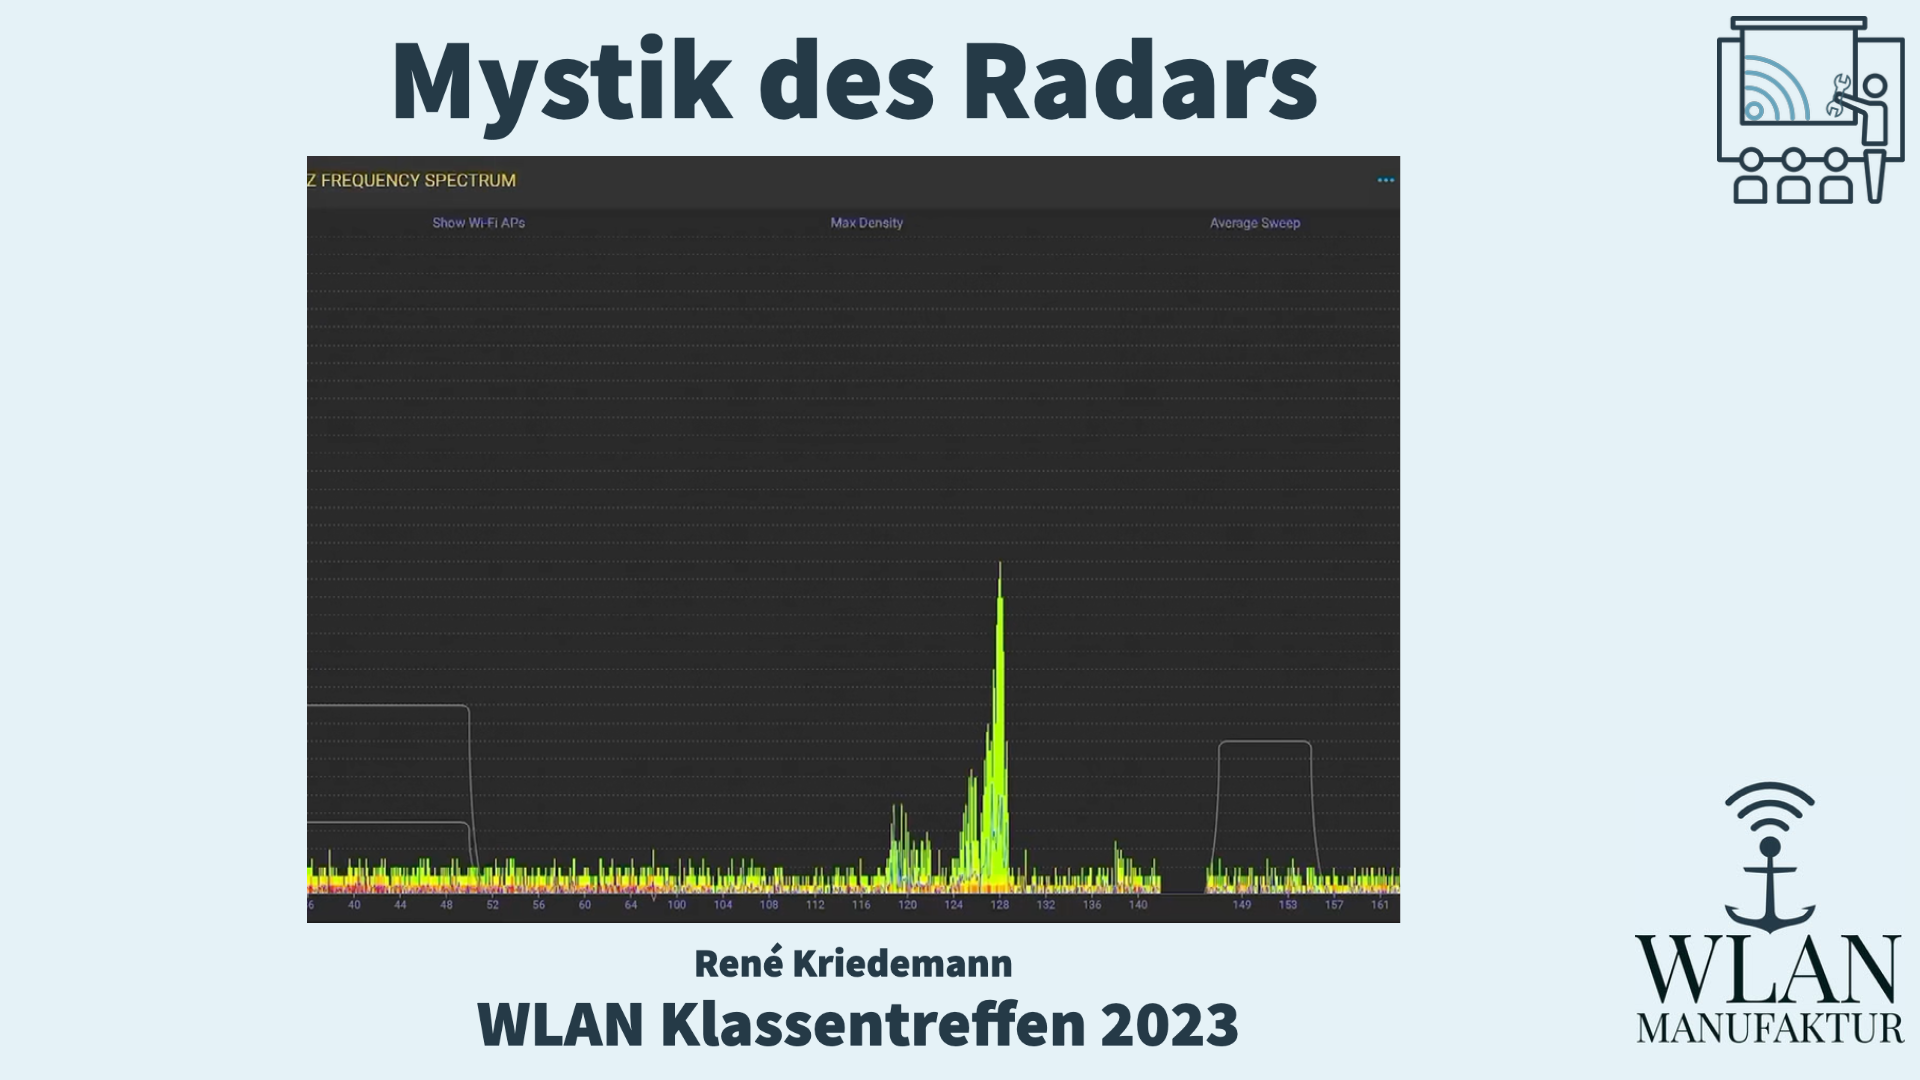 Video laden: Aufzeichnung der Präsentation vom WLAN Klassentreffen - Die Mystik des Radars